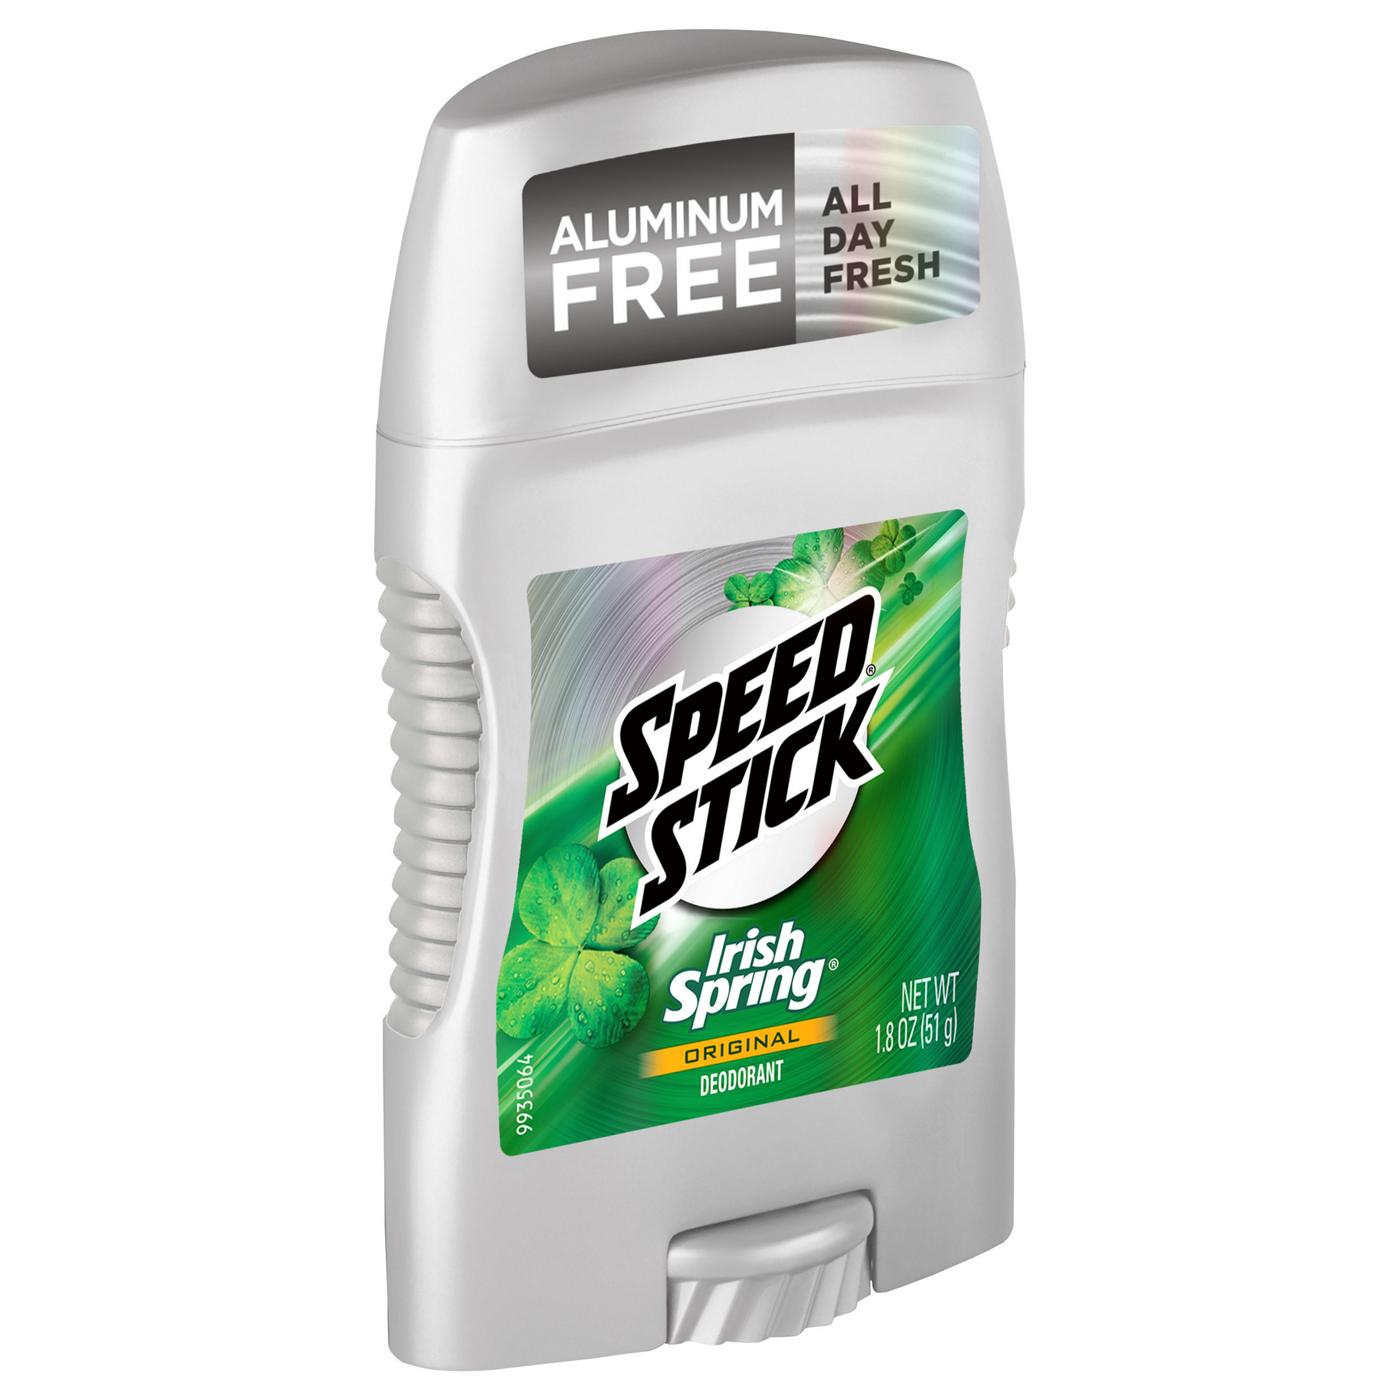 Speed Stick Irish Spring Trial Size Deodorant - Original; image 1 of 10